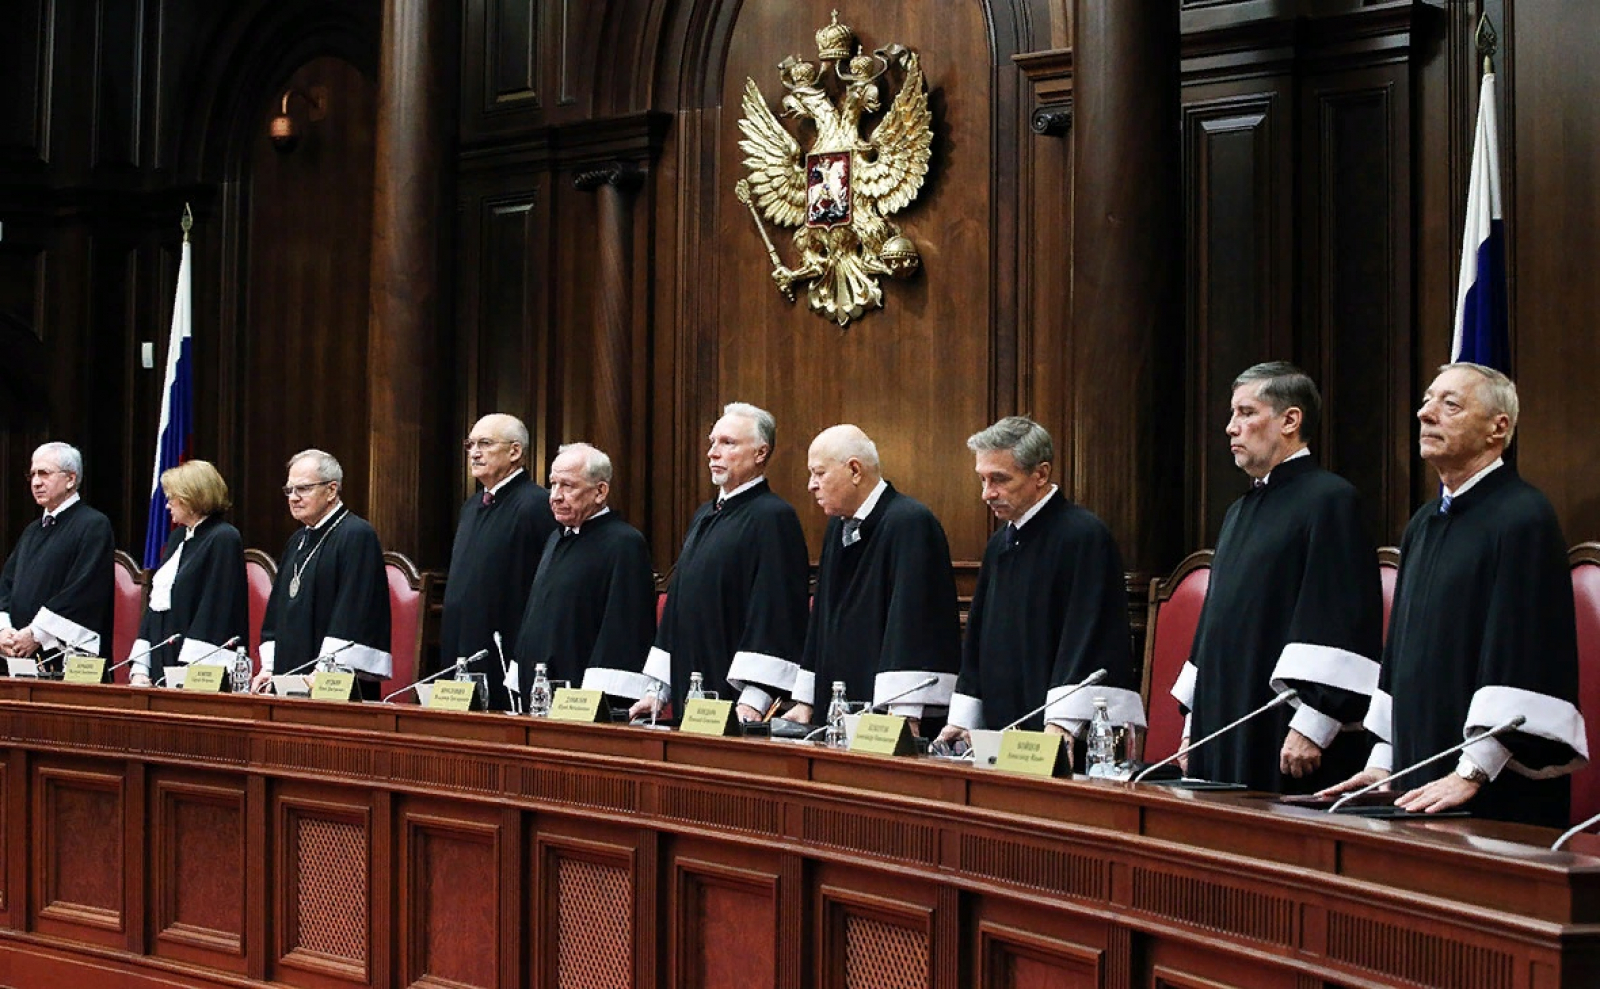 Конституционный суд реферат